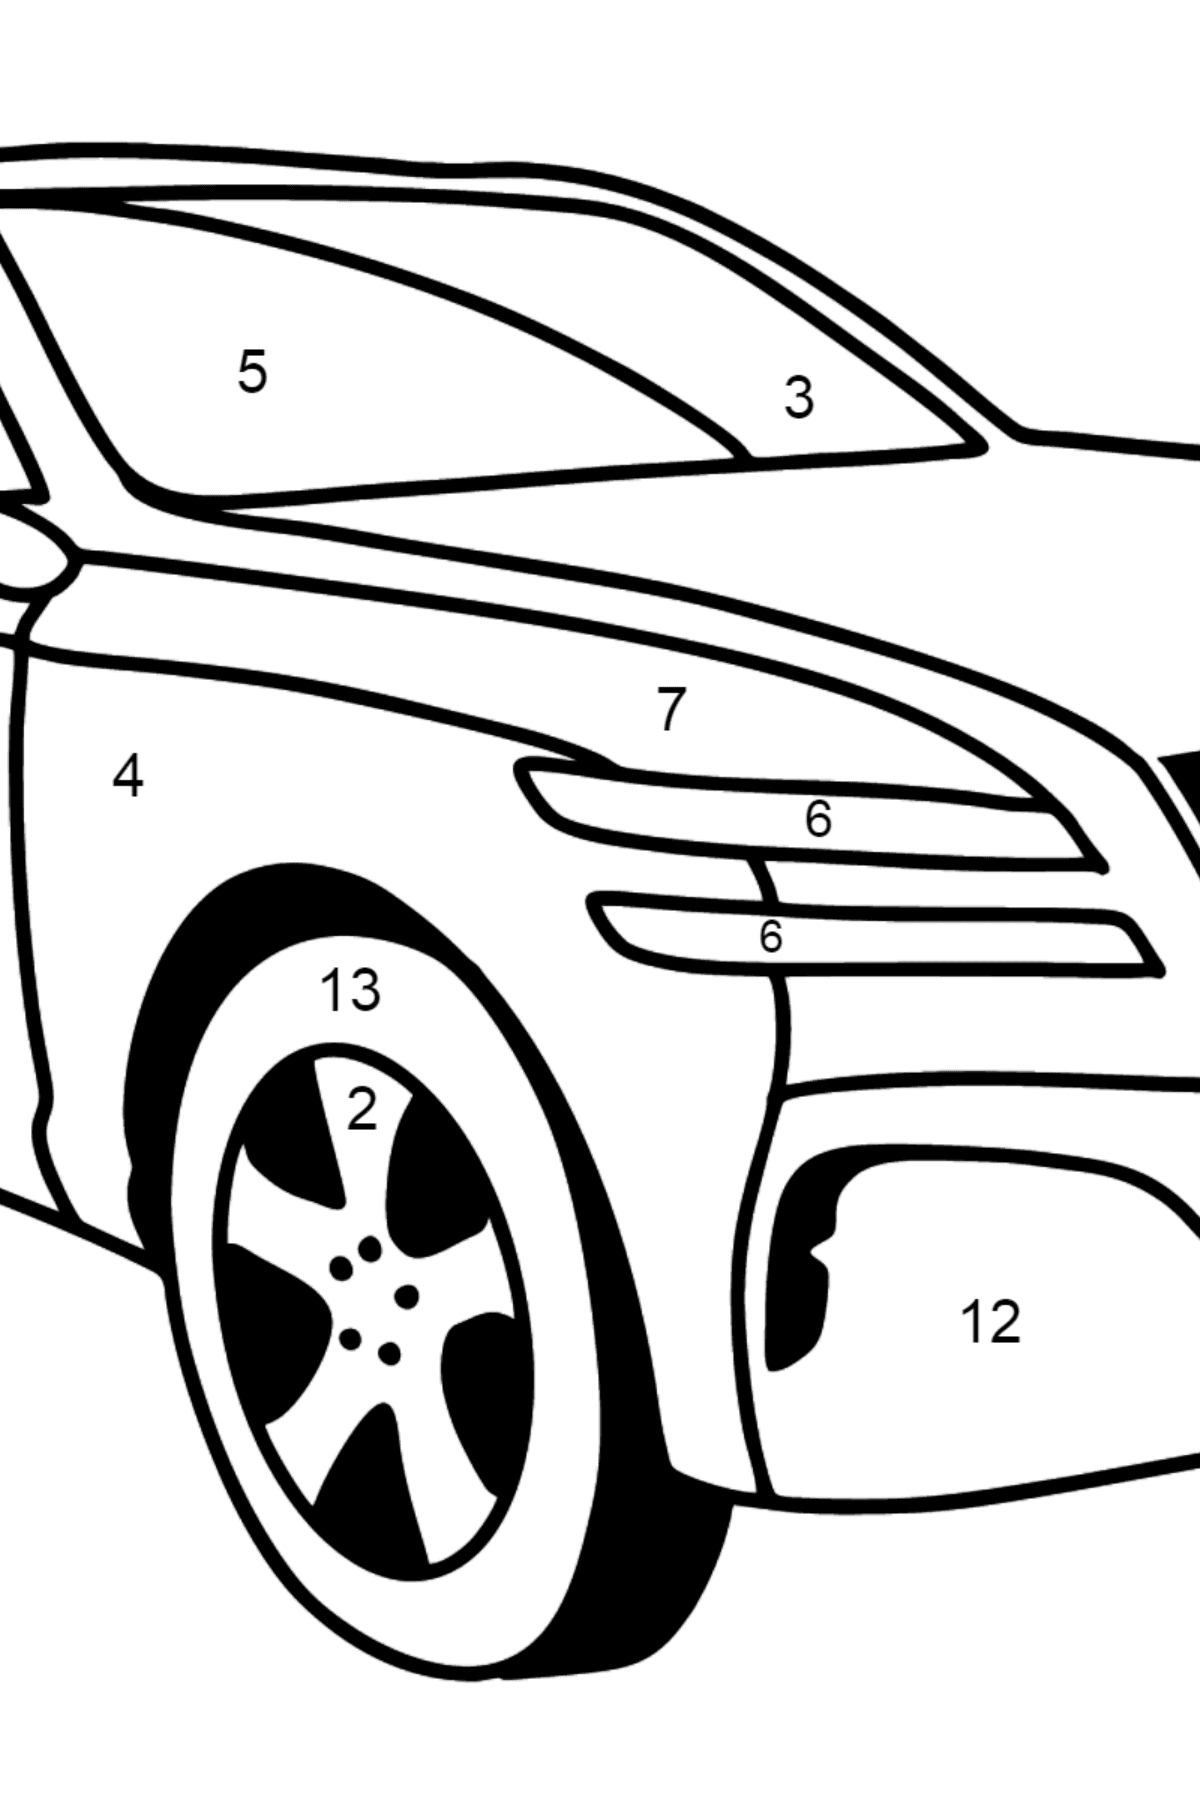 Genesis Auto Ausmalbild - Malen nach Zahlen für Kinder